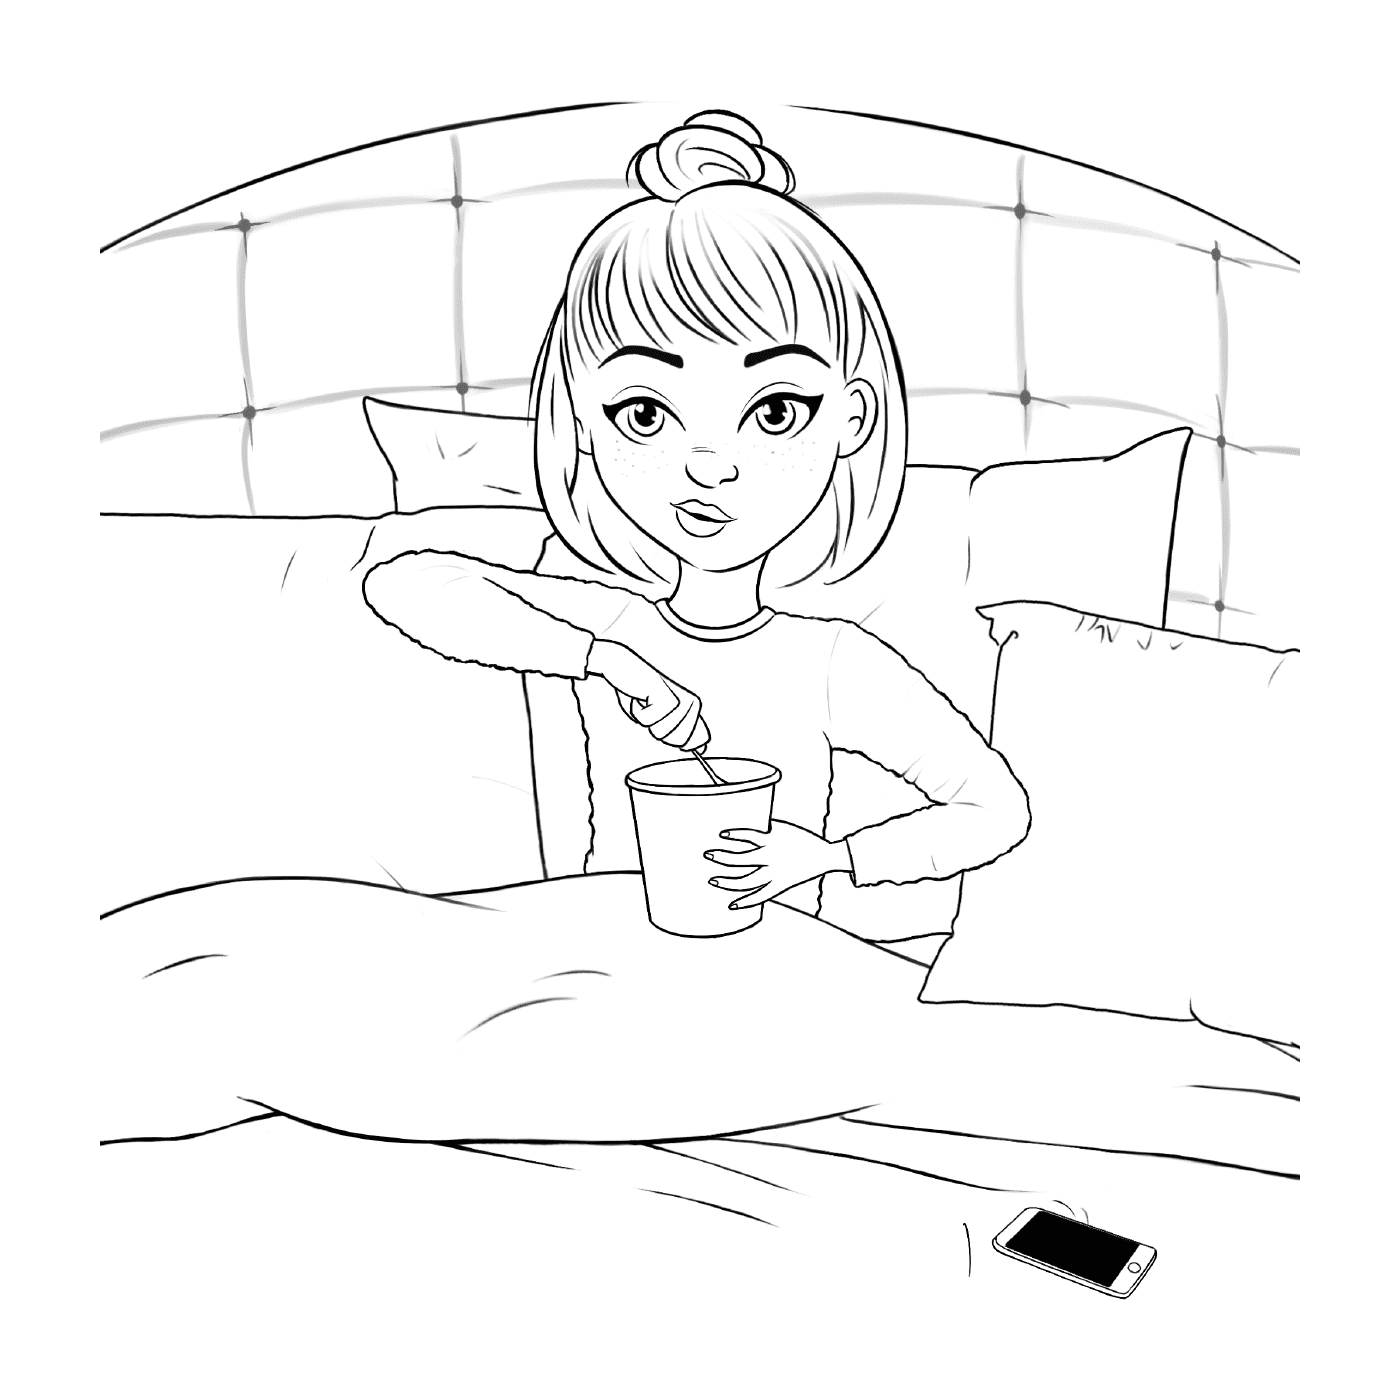  Adolescente chica en la cama con helado 